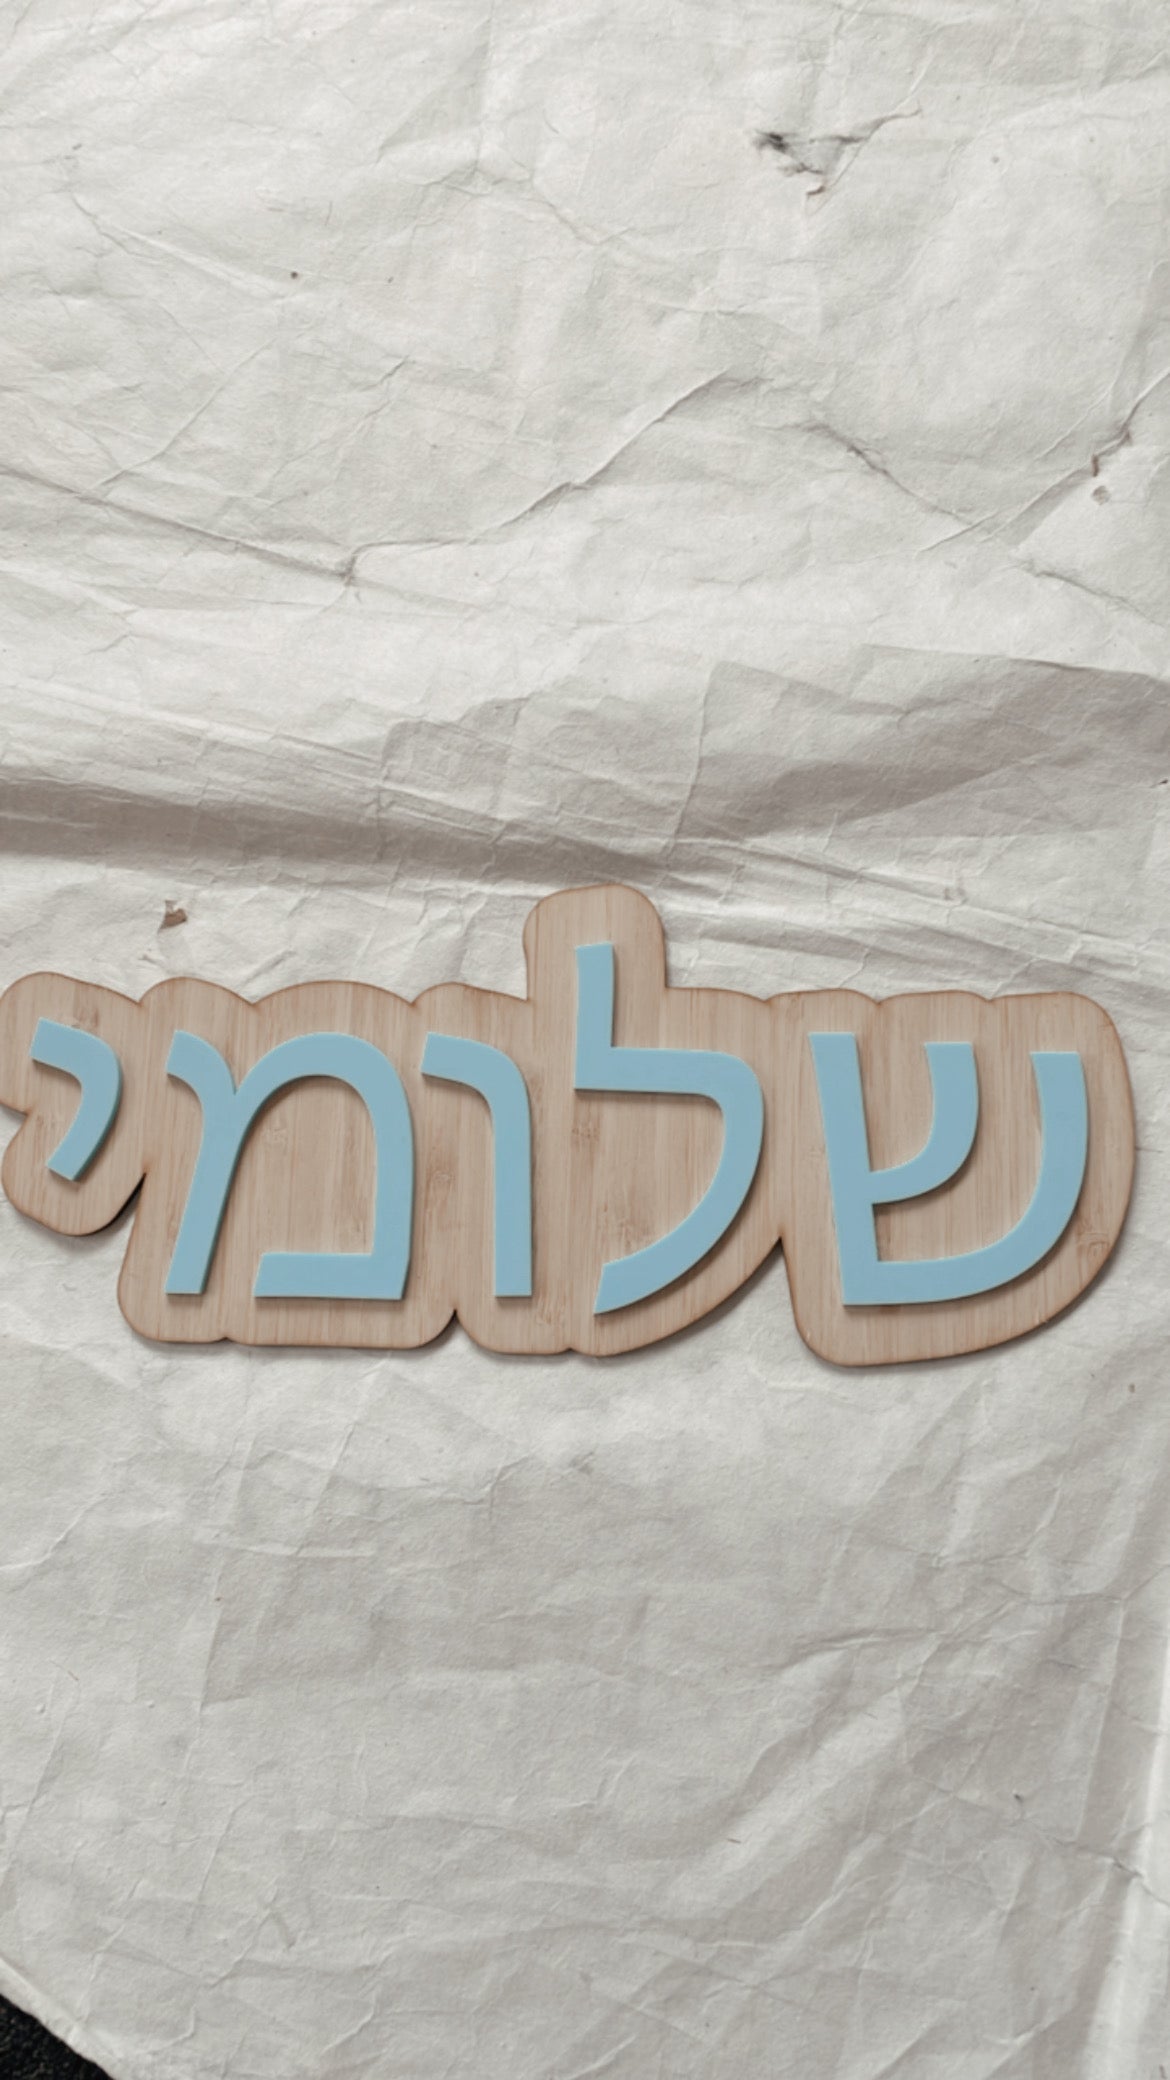 Hebrew name wall script